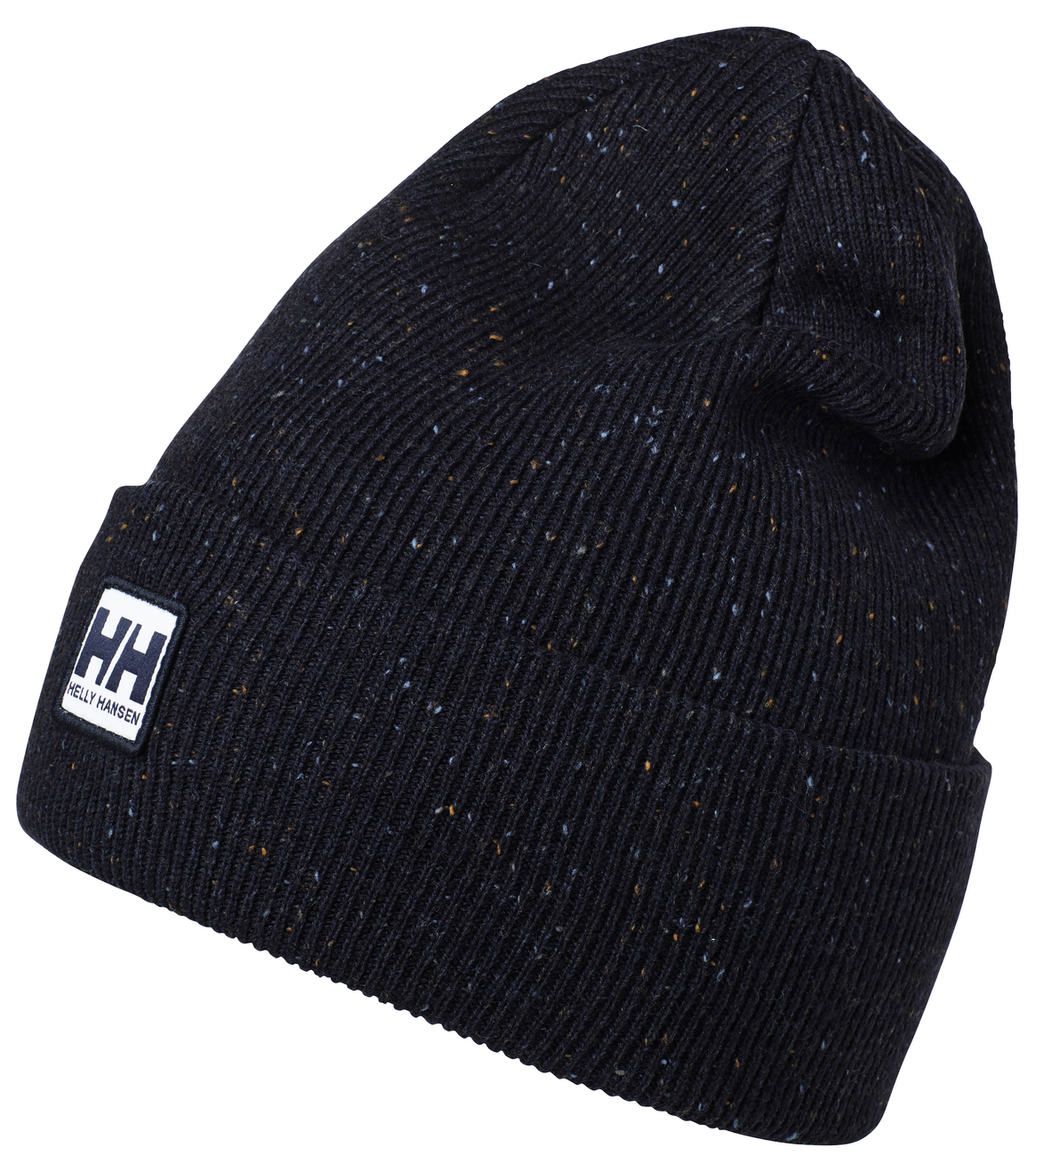 Helly Hansen Unisex Urban Cuff Beanie Hat (Black)